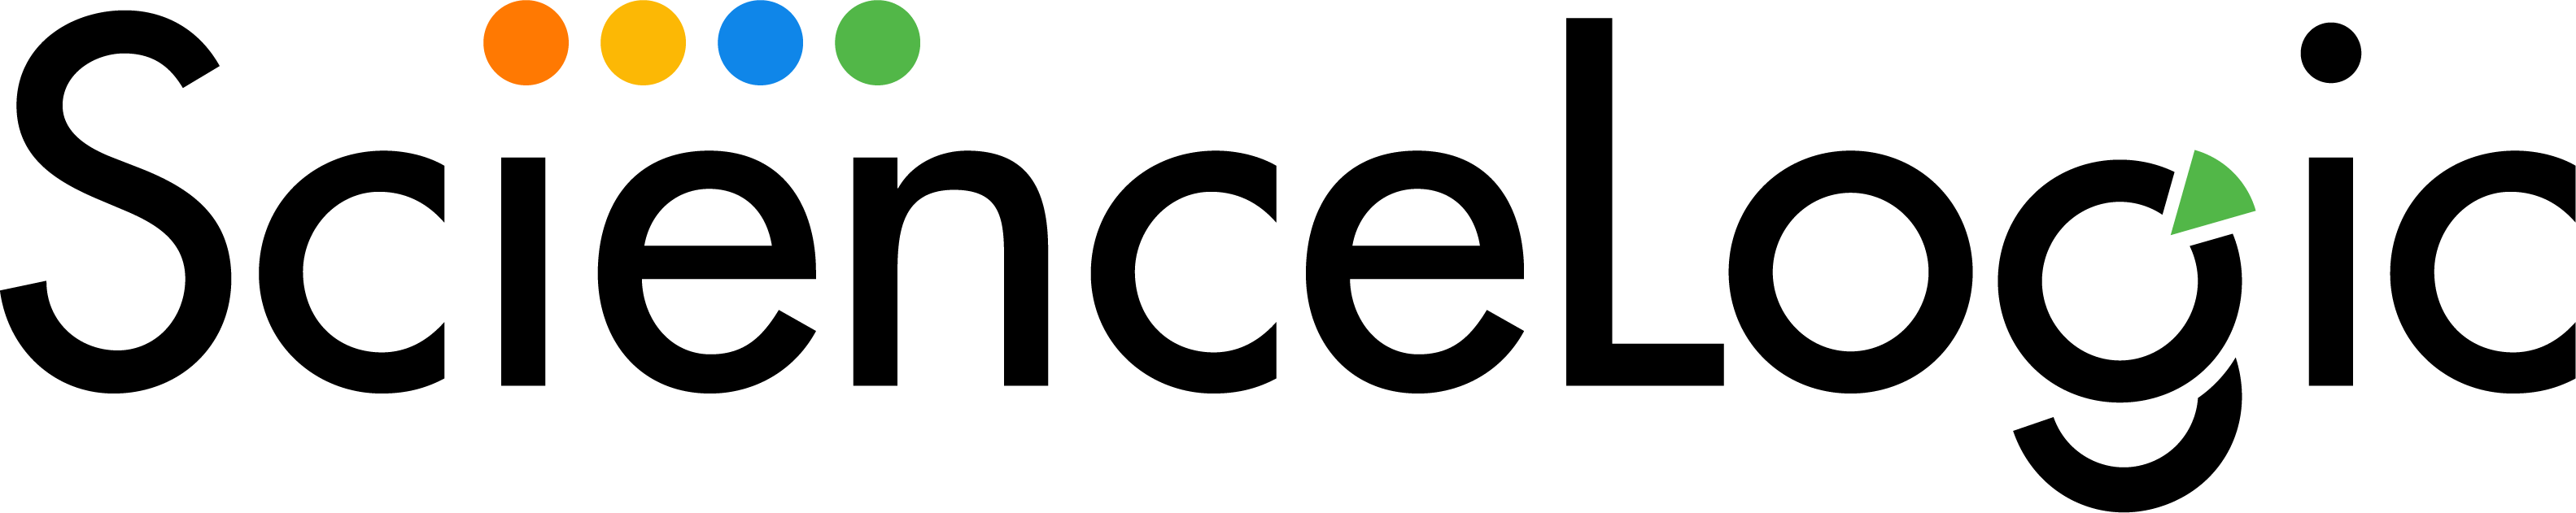 ScienceLogic's logo